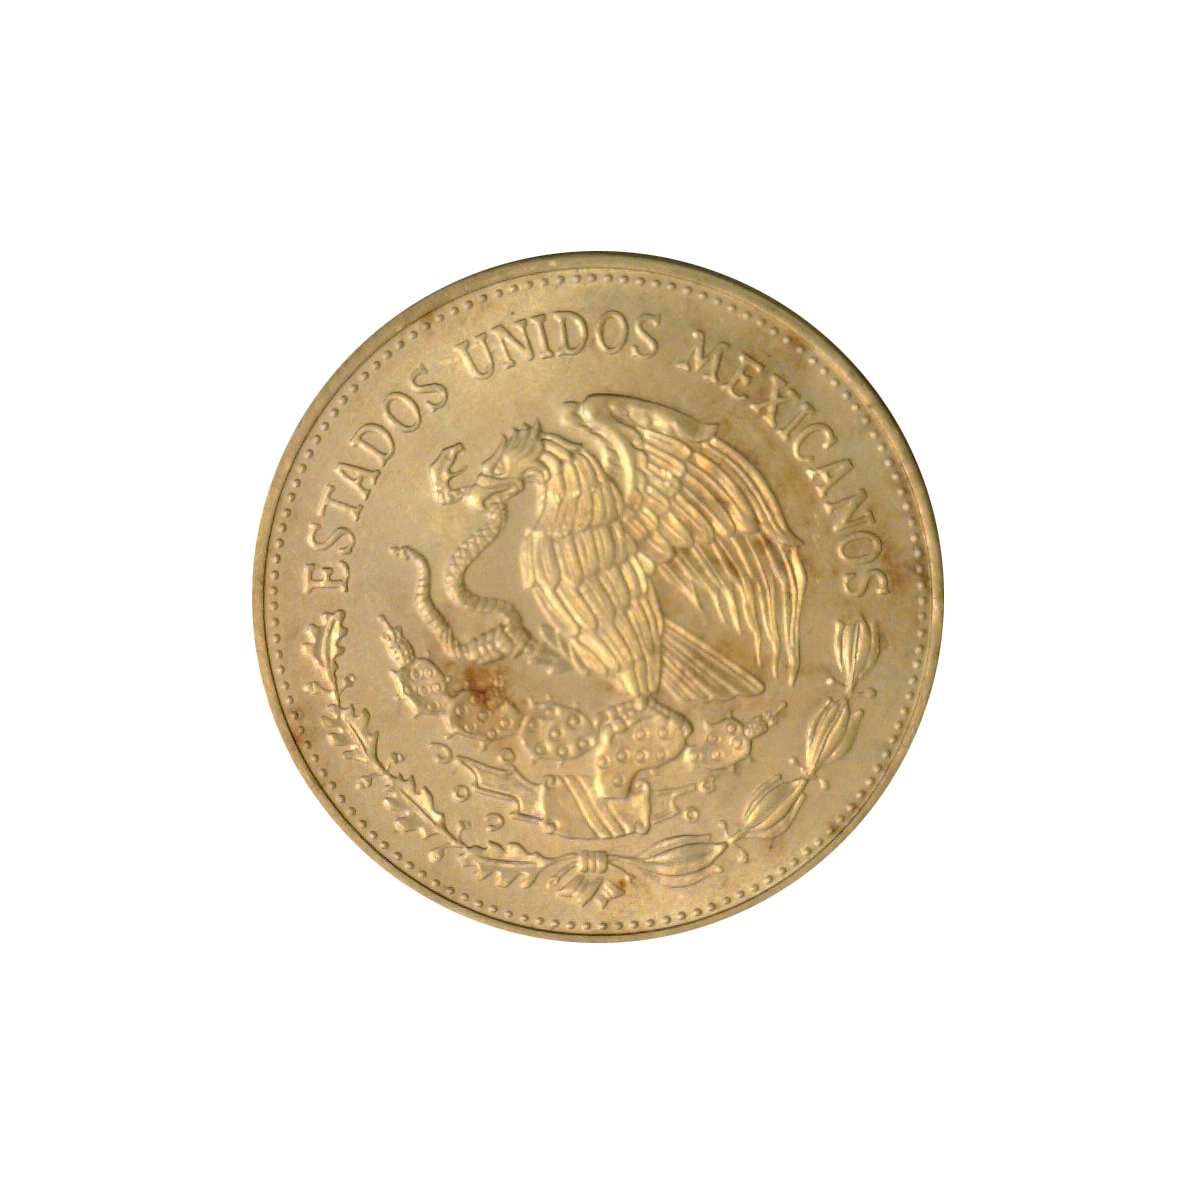 1/2 אונקיה מטבע זהב - יובל ה-50 לתעשית הנפט